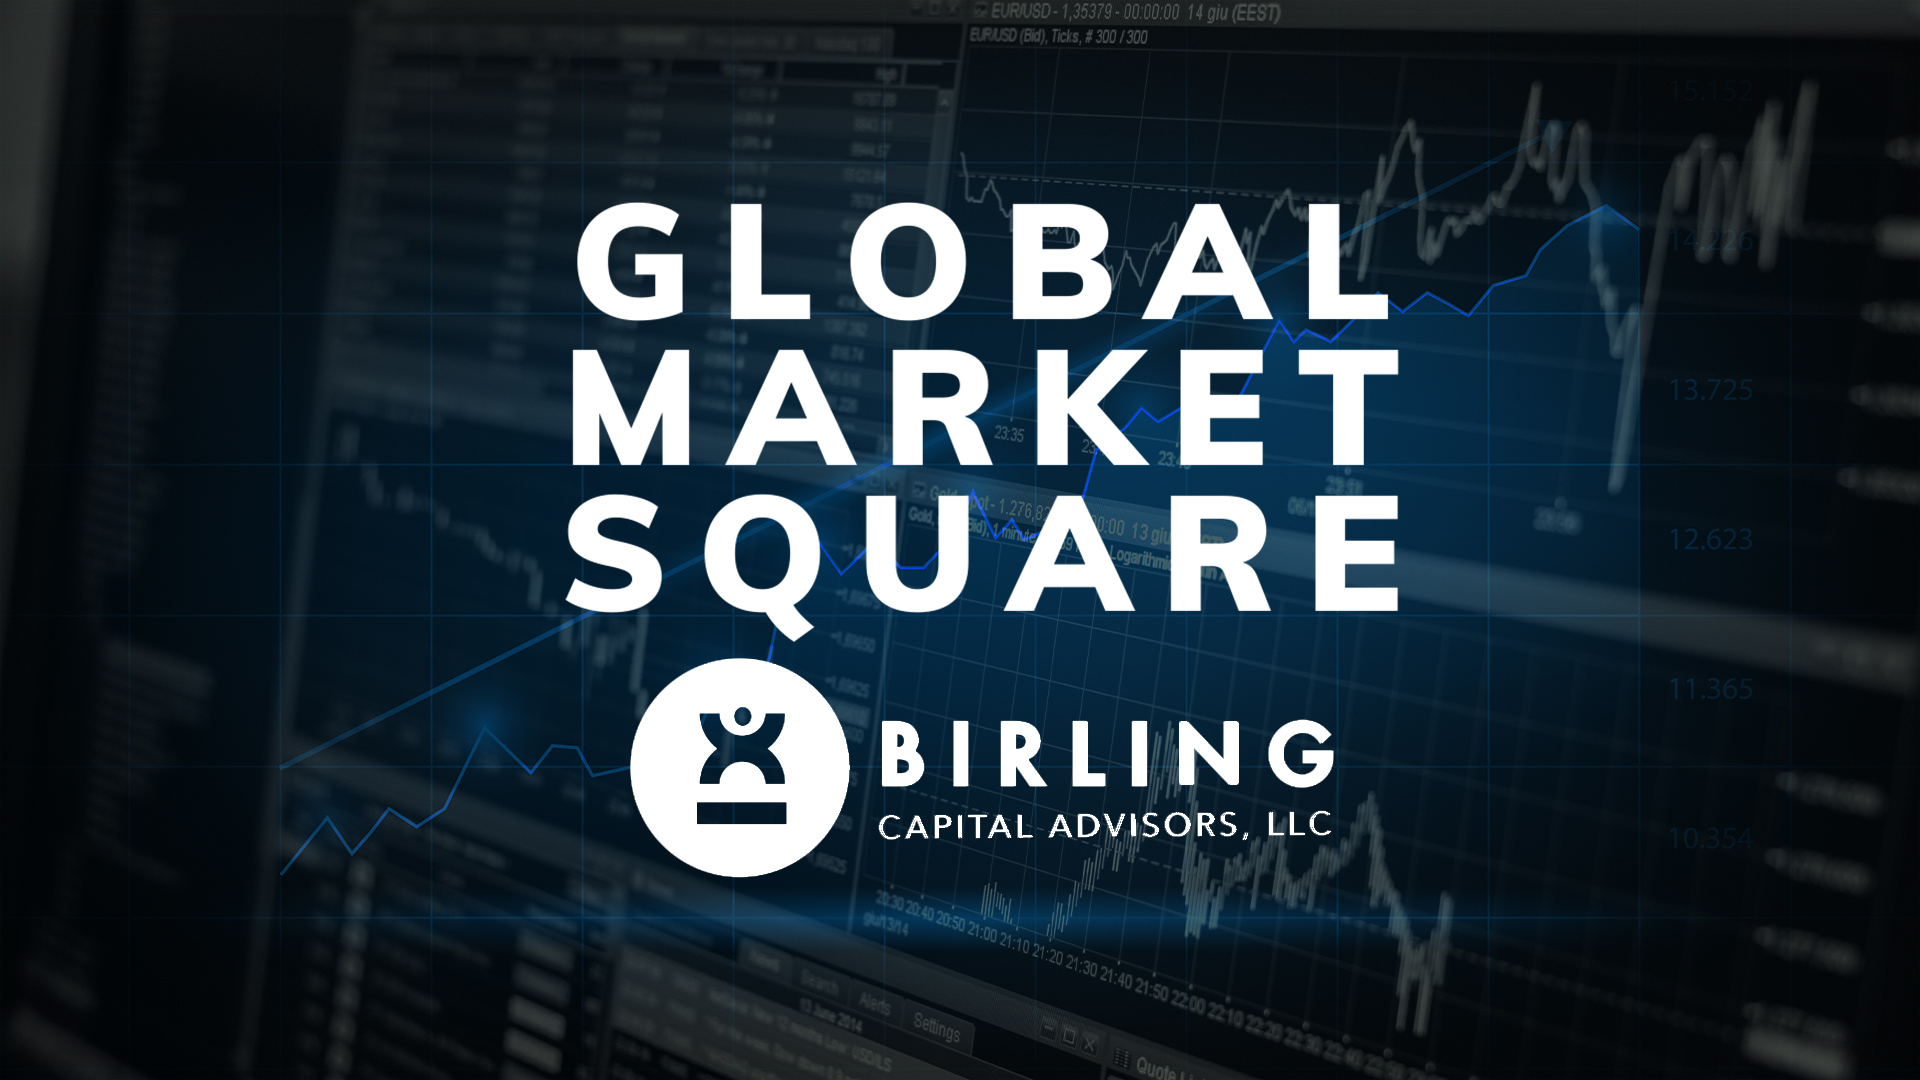 El déficit comercial de Estados Unidos cayó -8.17%, Wall Street cierra mixto, Global Market Square presentado por Birling Capital